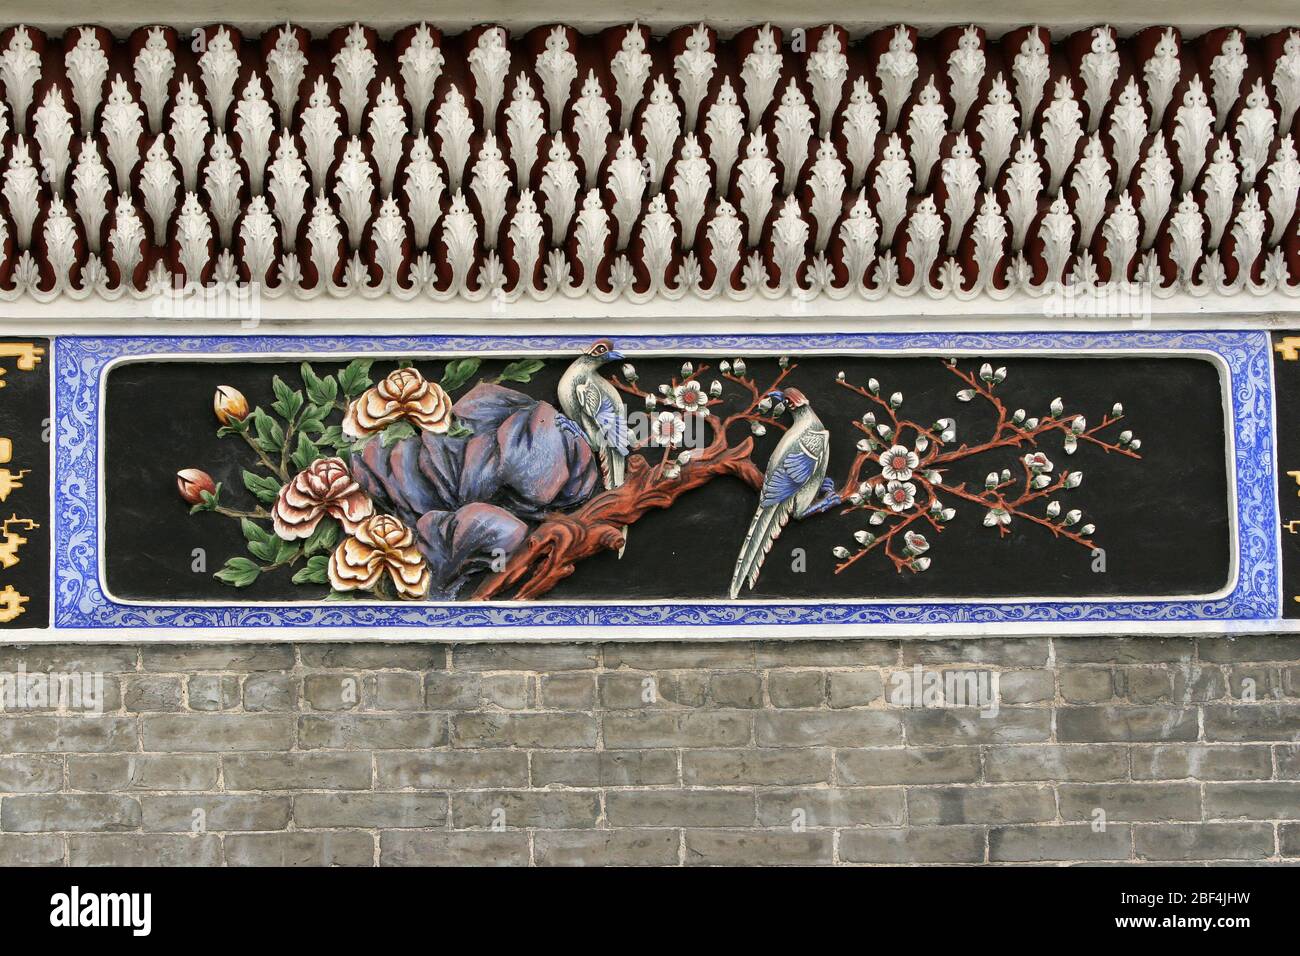 Flower paintings of birds and flowers in Shenjing Changzhou Town Huangpu District Guangzhou Stock Photo